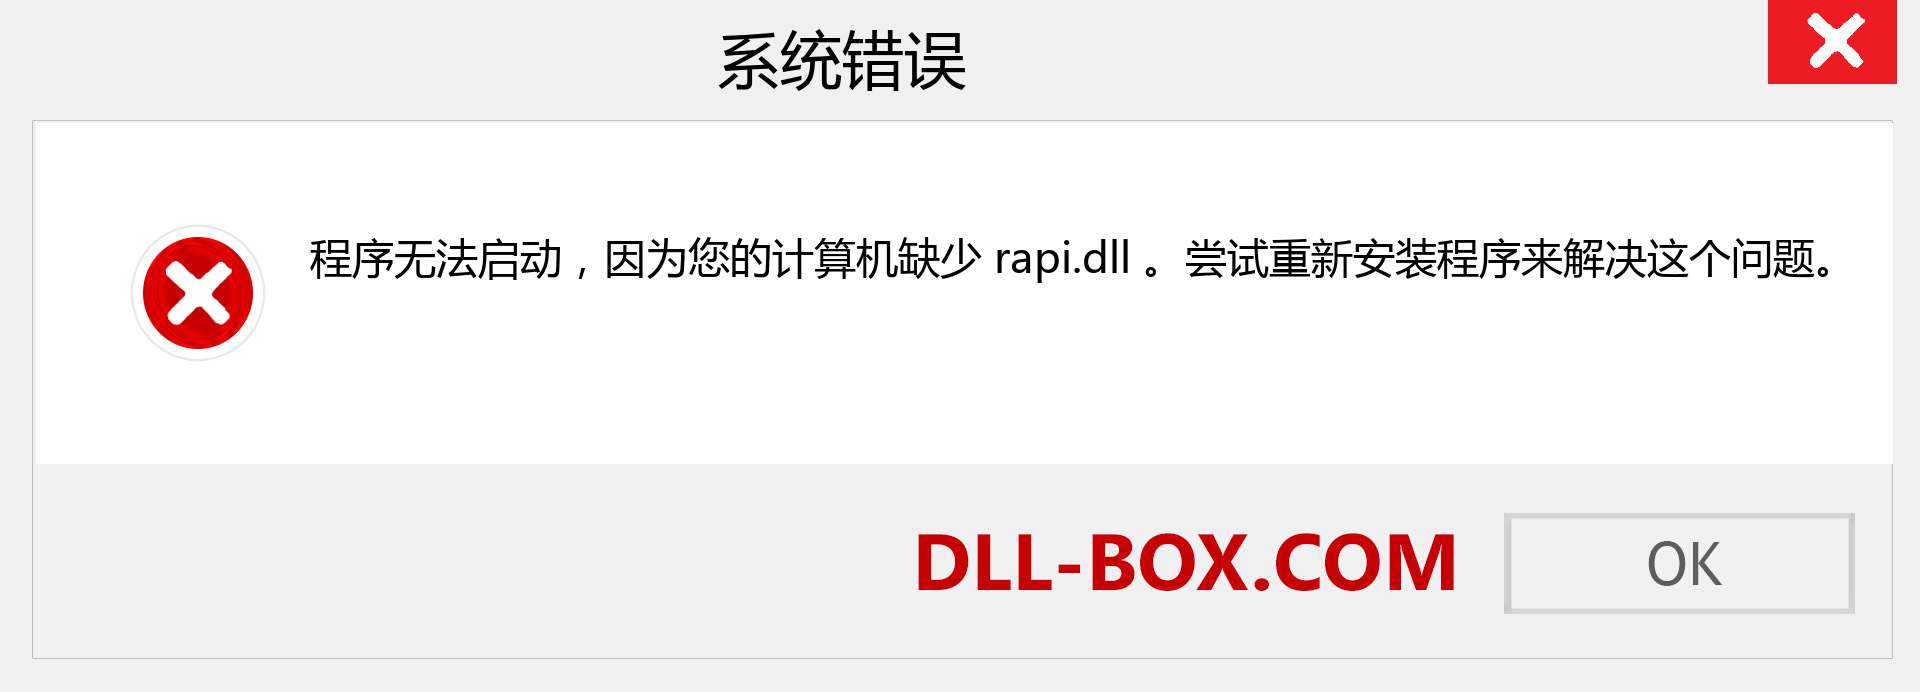 rapi.dll 文件丢失？。 适用于 Windows 7、8、10 的下载 - 修复 Windows、照片、图像上的 rapi dll 丢失错误